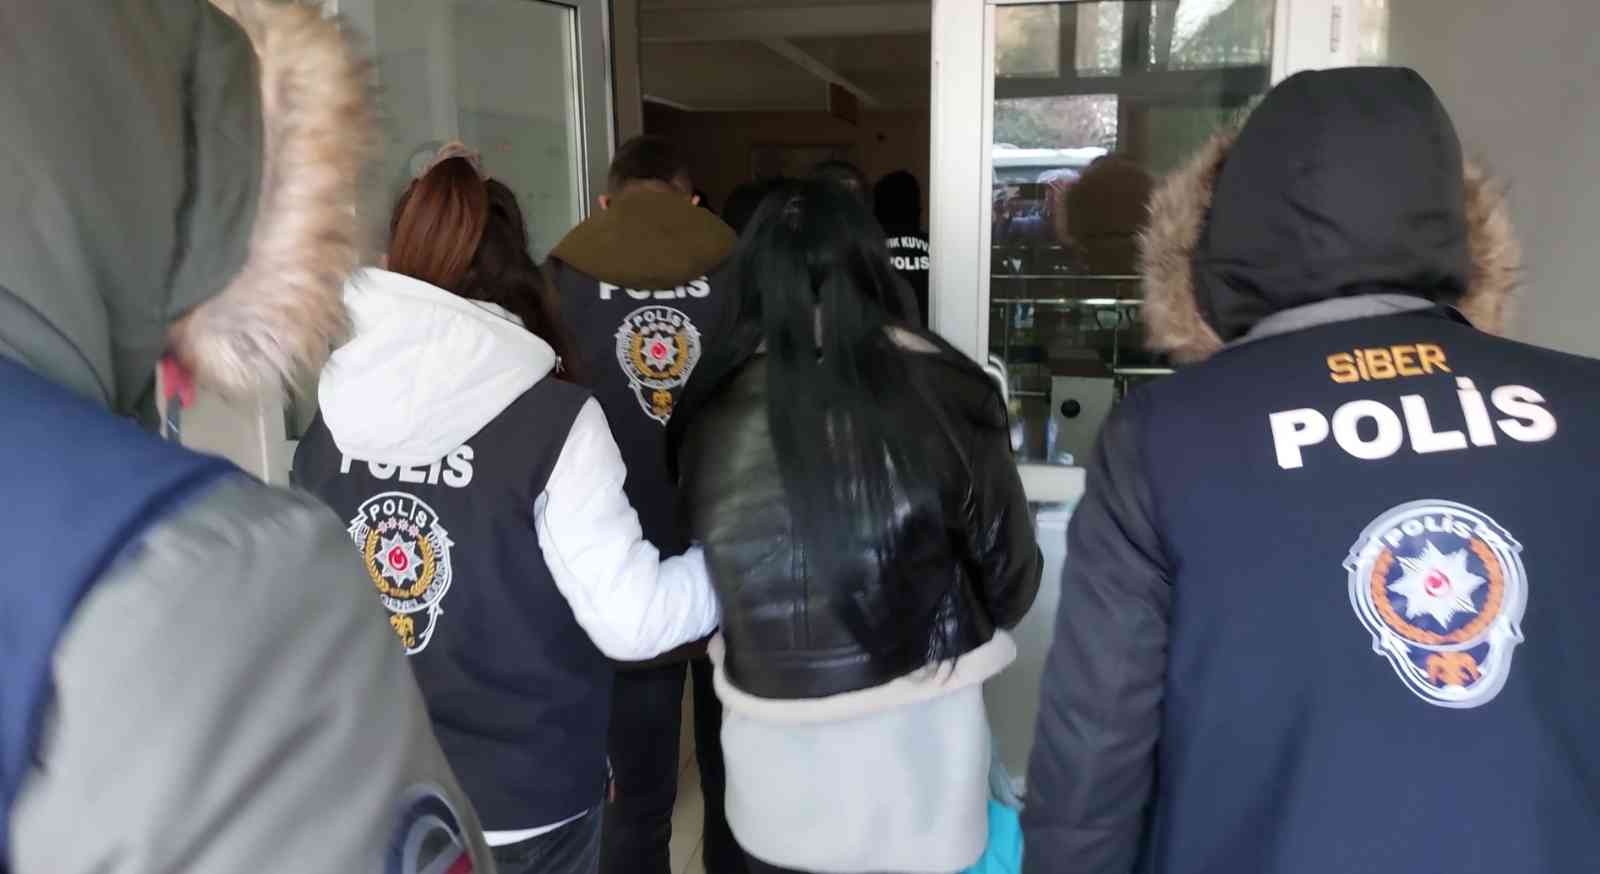 Samsun’da yasa dışı bahisten 3 tutuklama, 5 adli kontrol #samsun